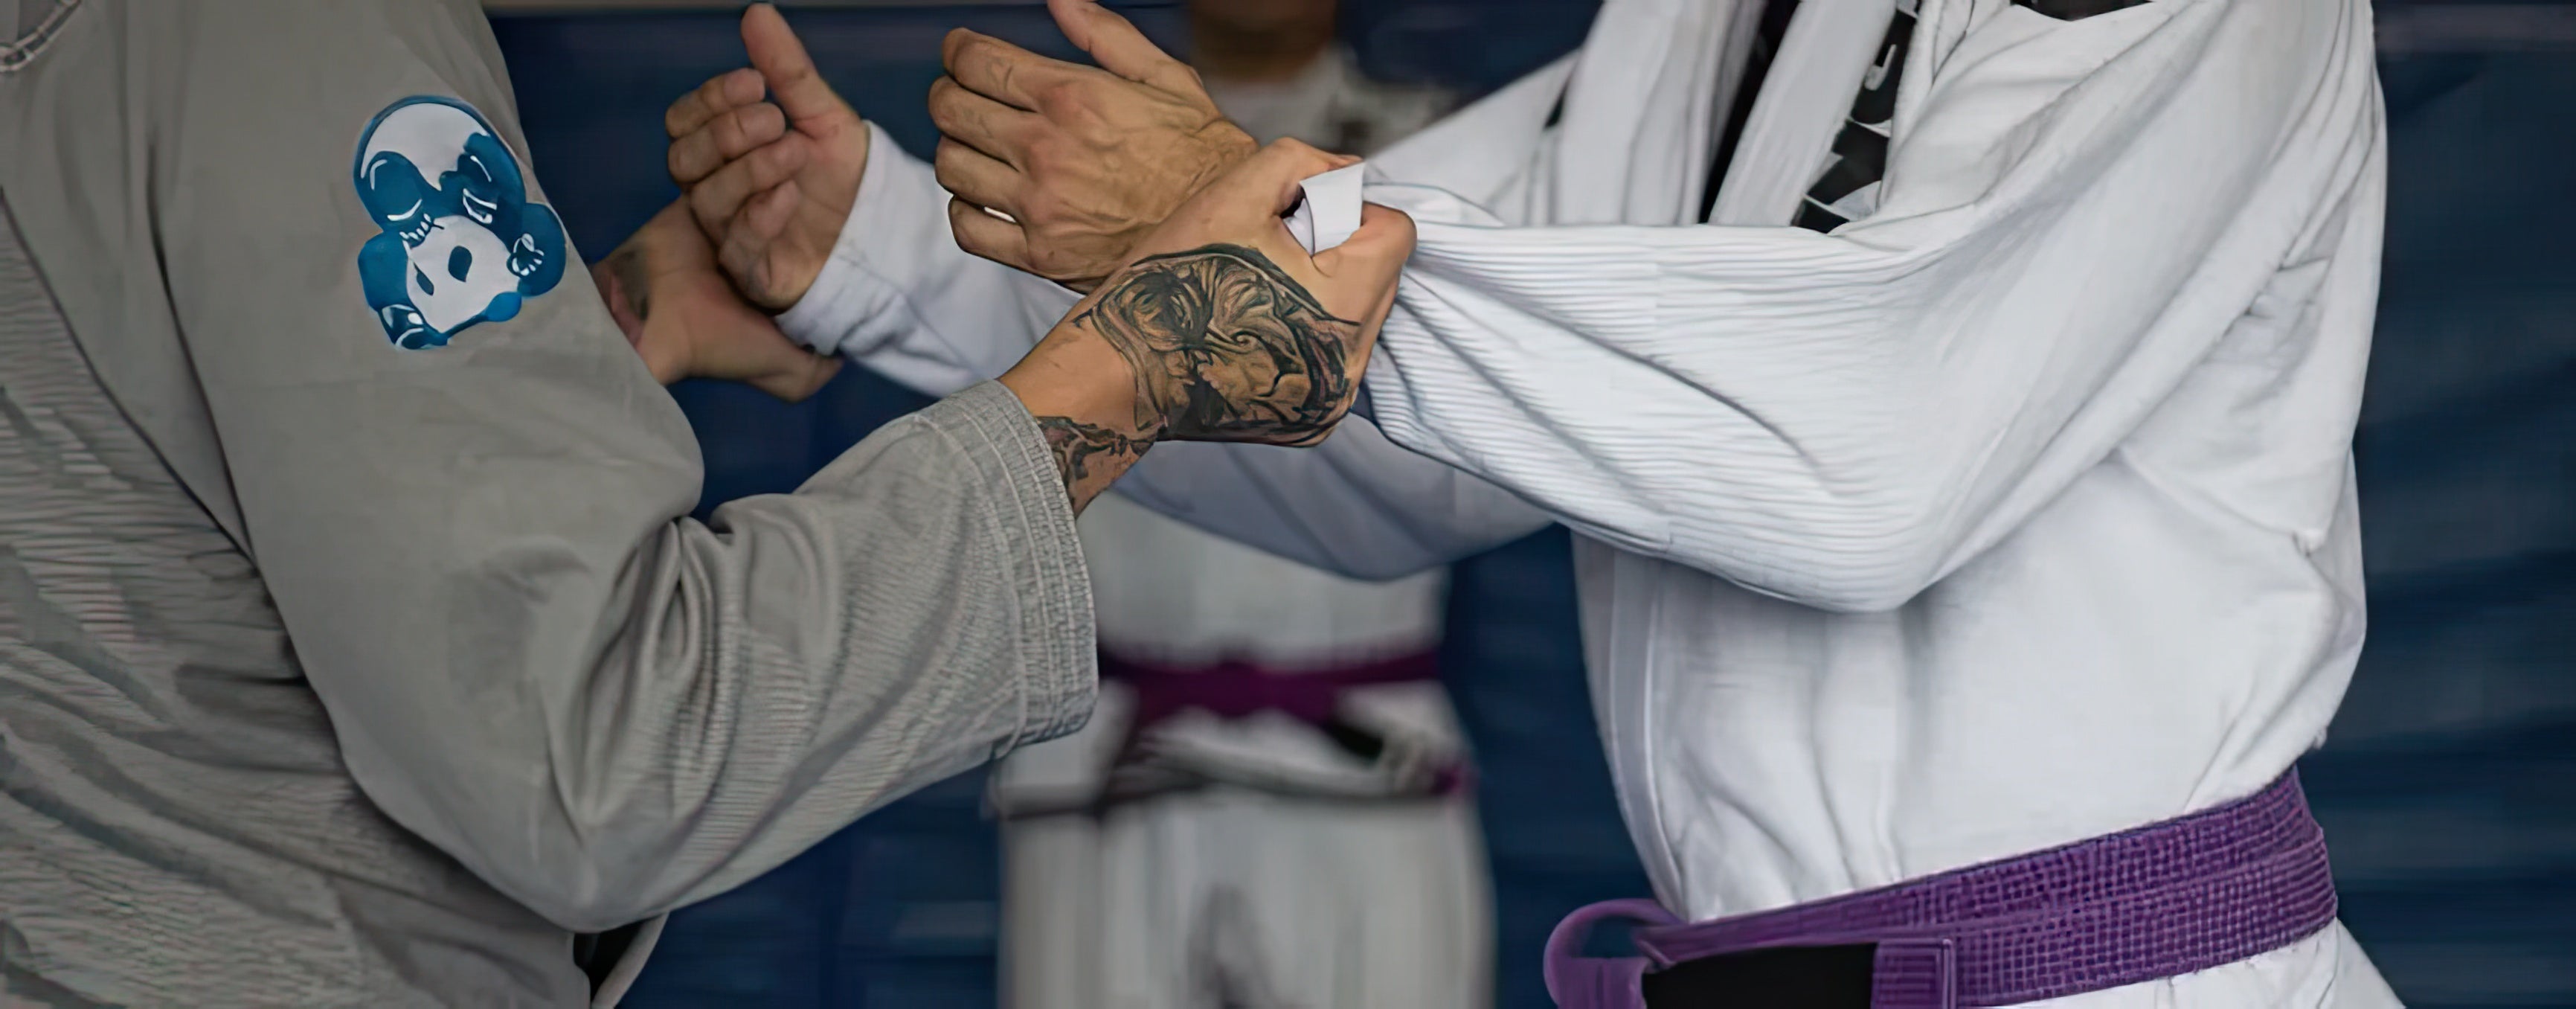 Close-up of a Brazilian Jiu-Jitsu gi grip technique during practice